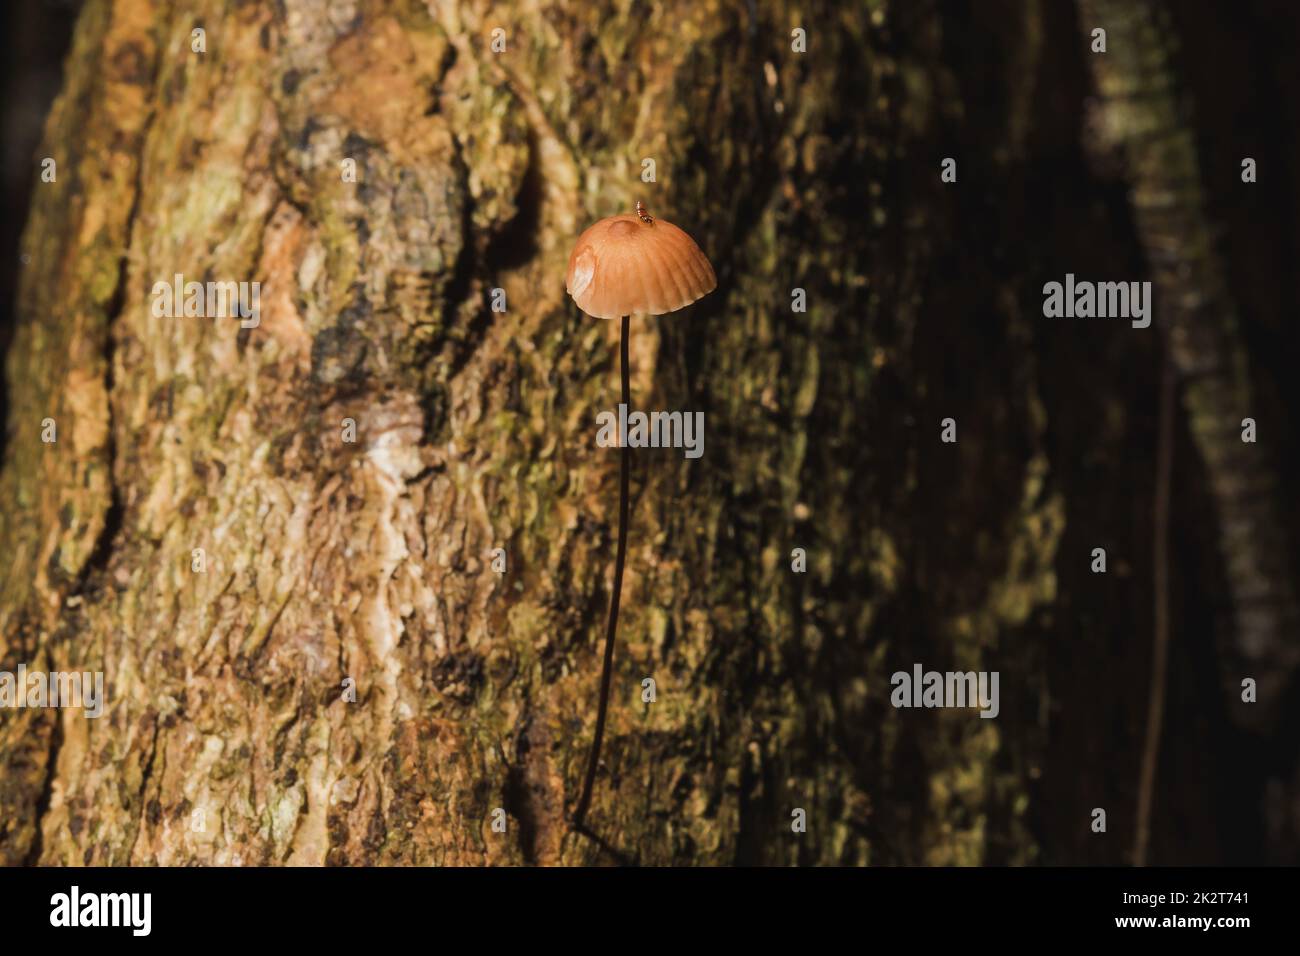 Petits champignons bruns sur l'écorce de la tige Banque D'Images